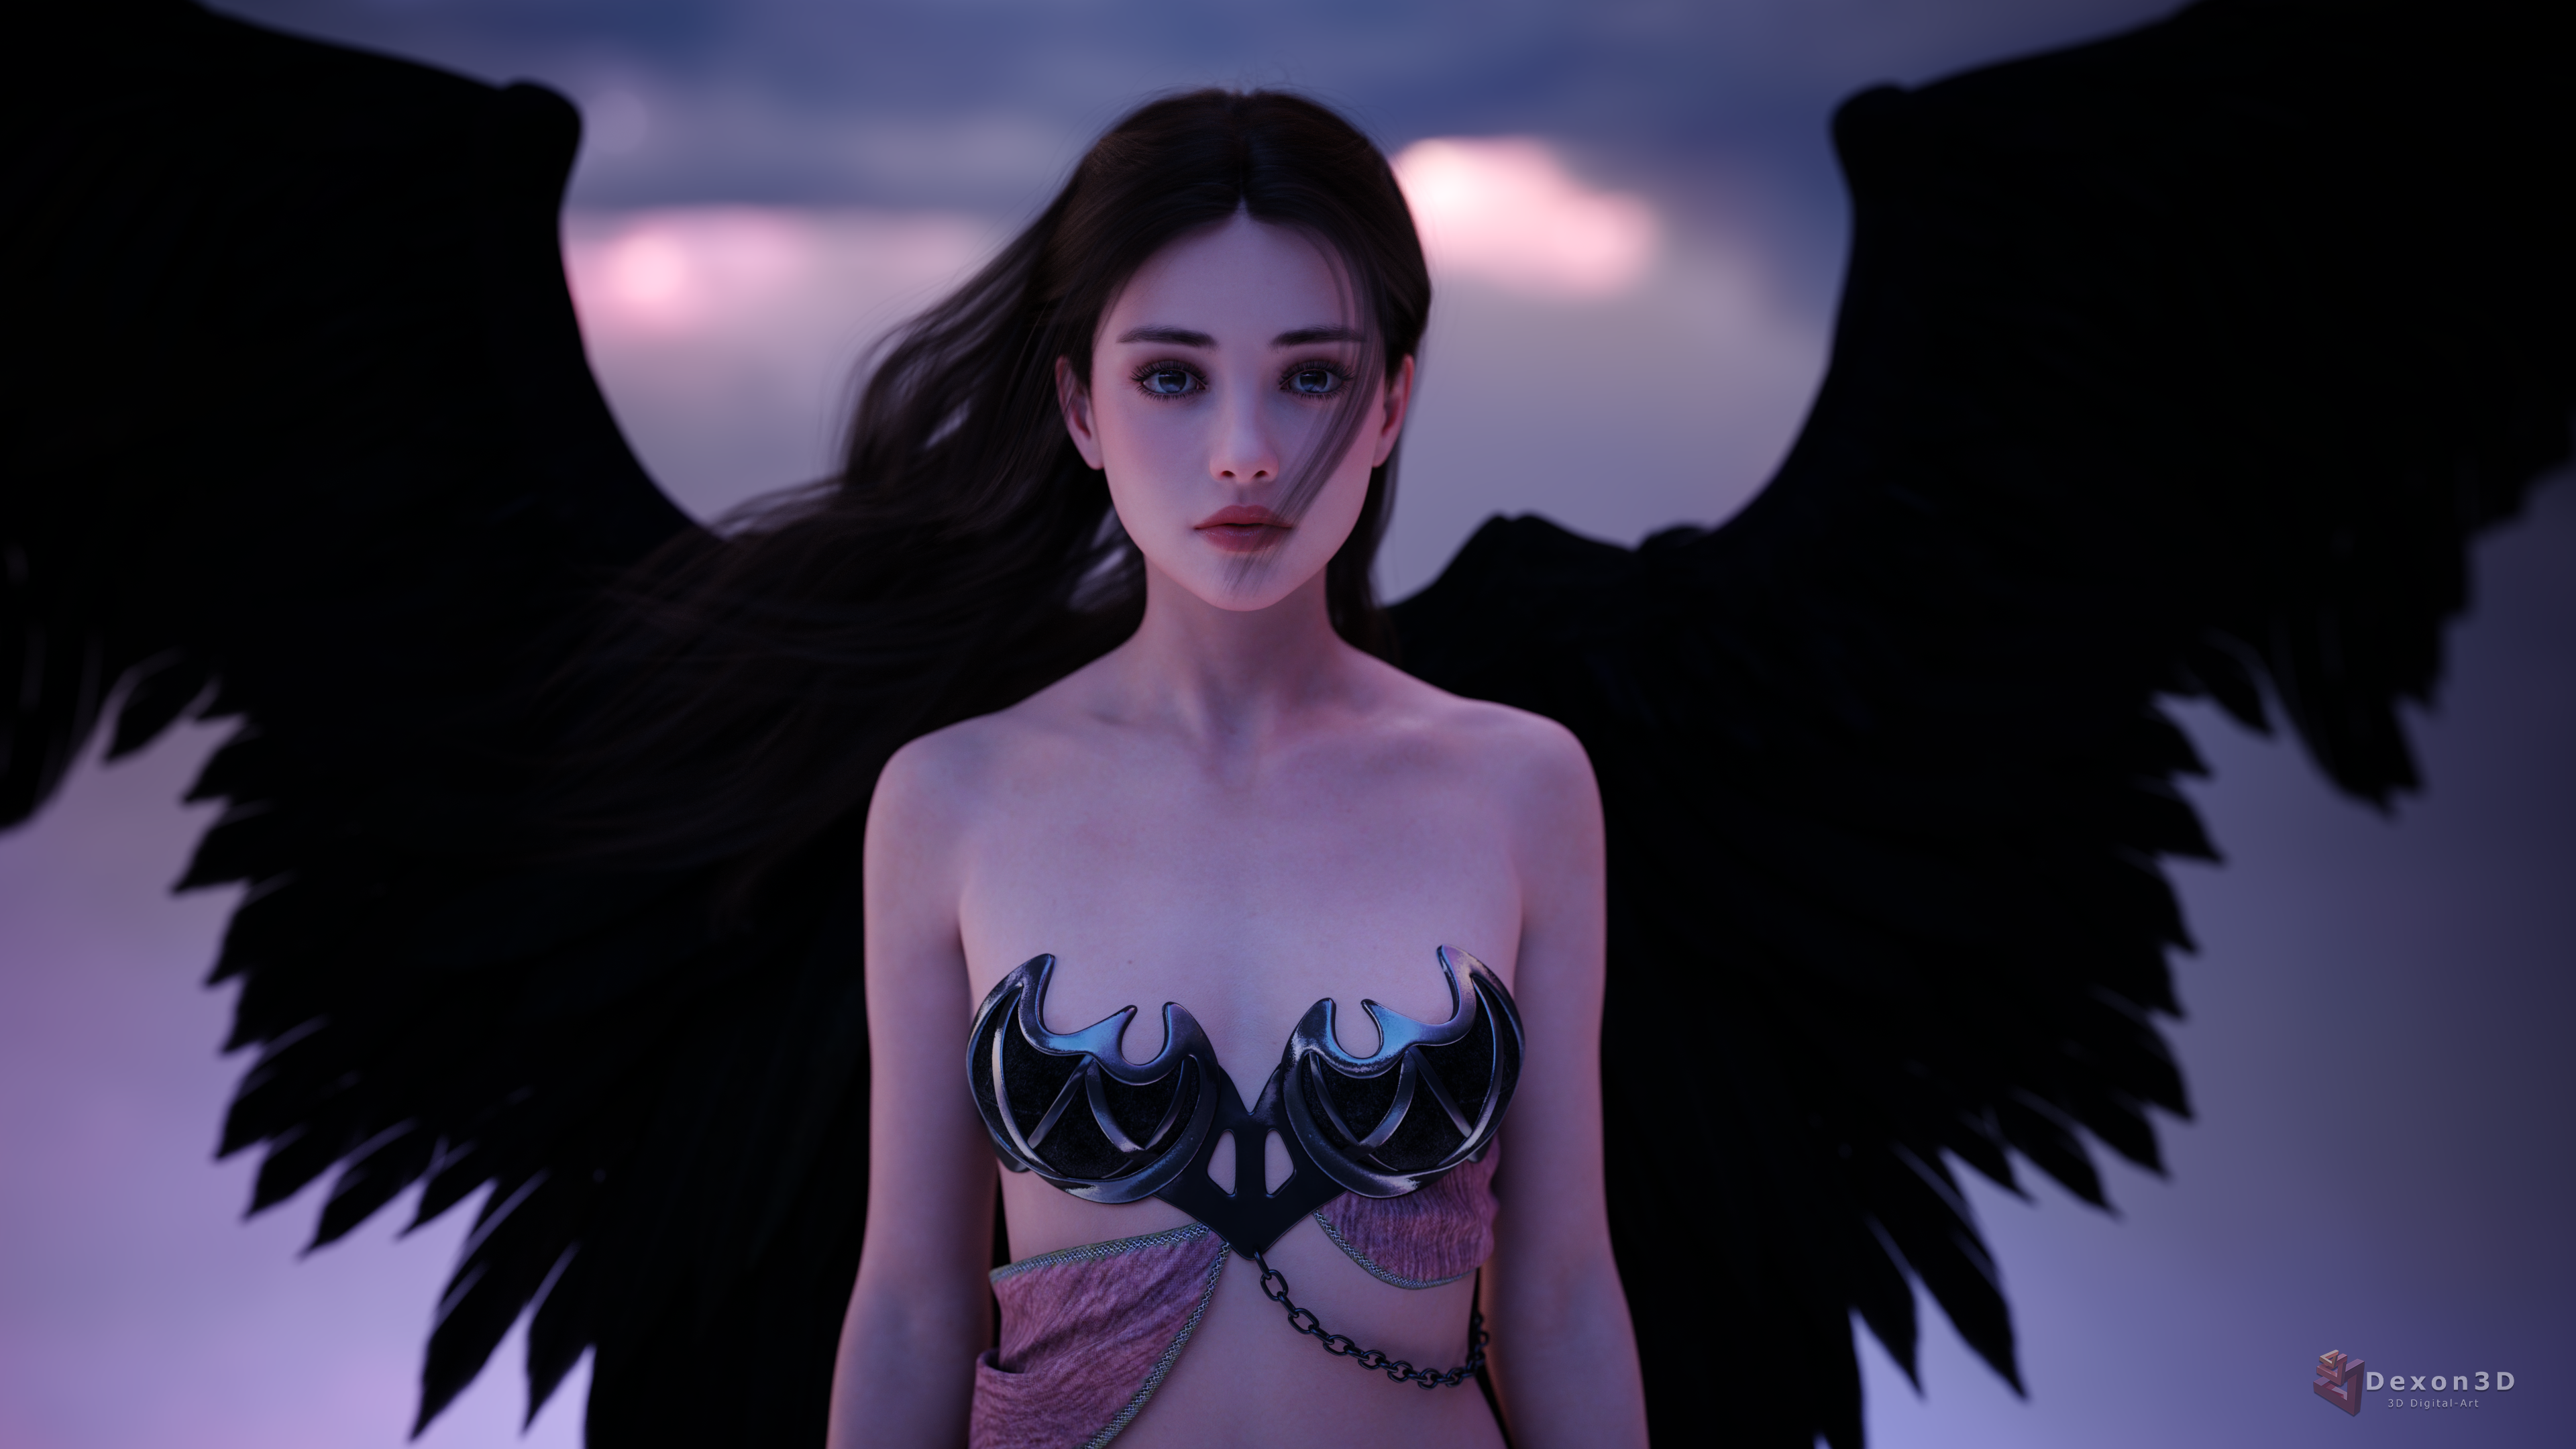 General 3840x2160 Dexon3D CGI women dark hair wind bra angel wings looking at viewer dark eyes sky